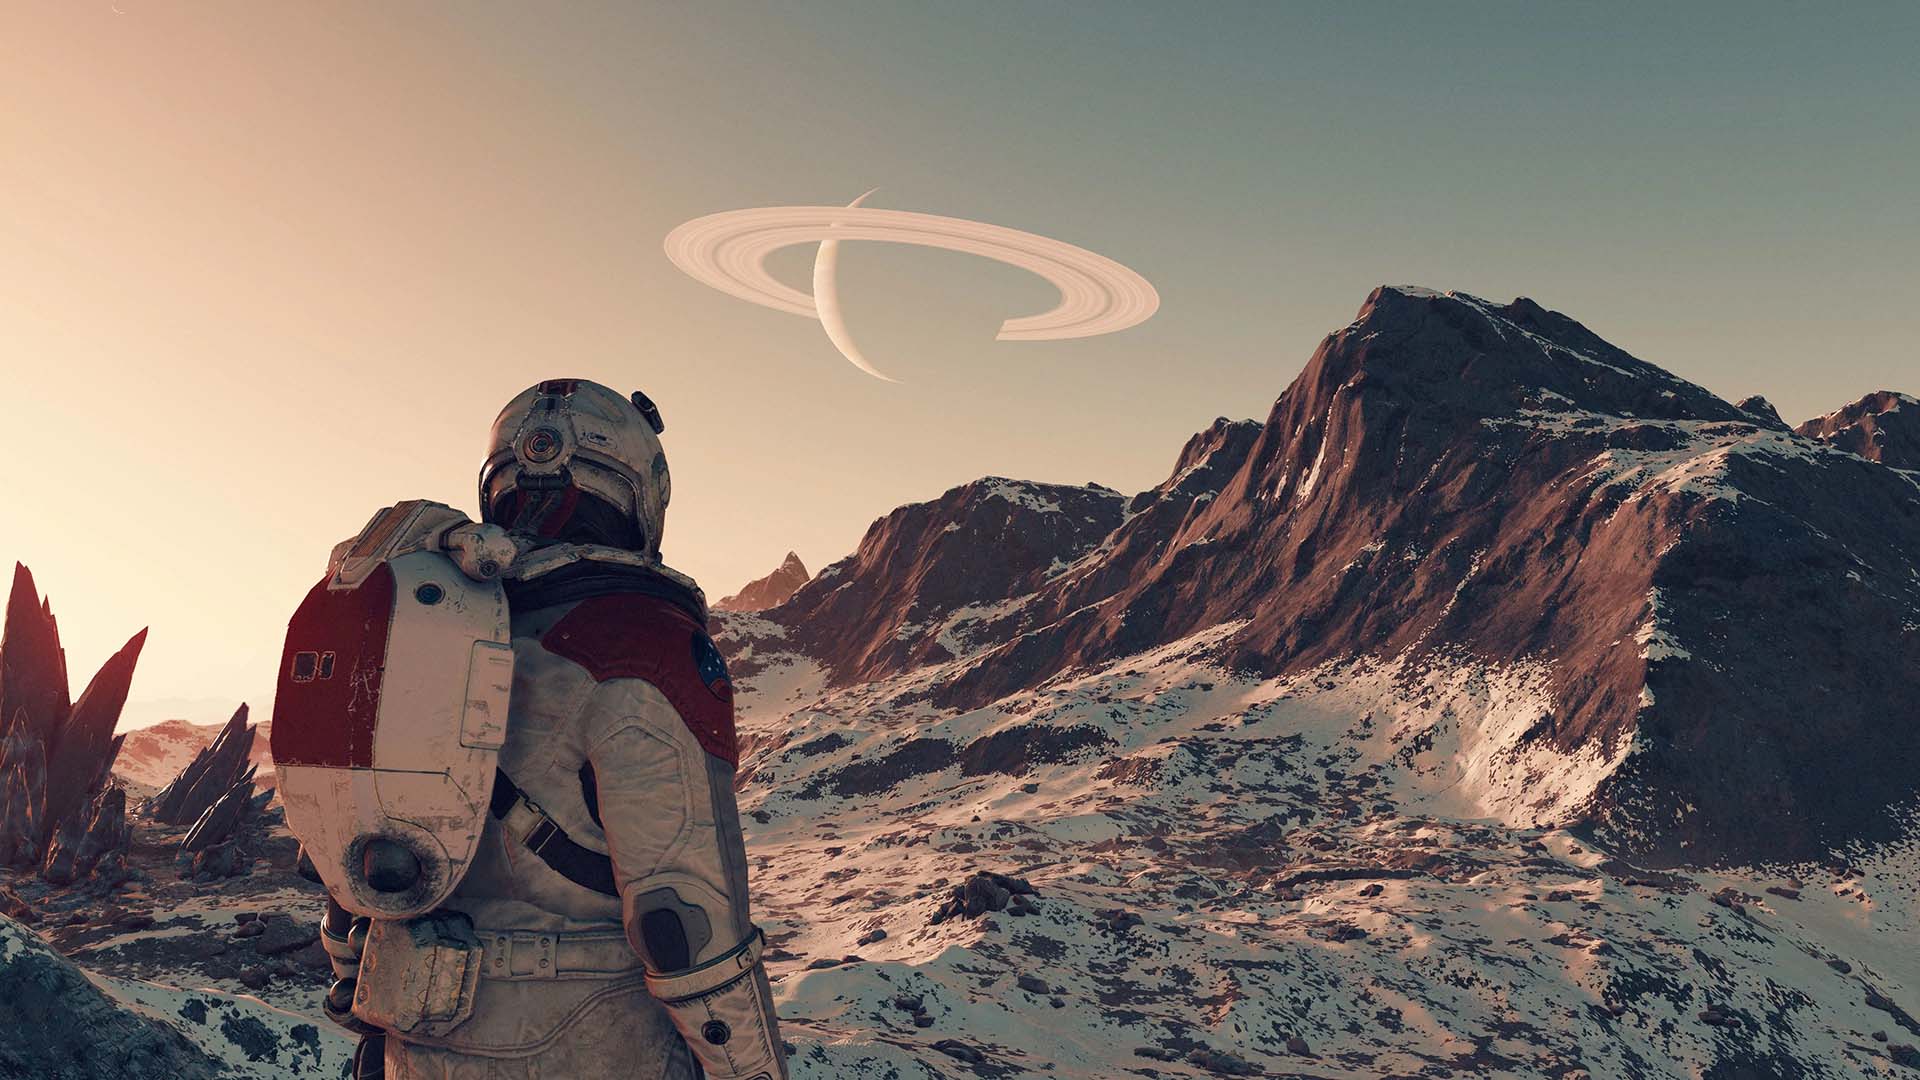 Postava hráče ve hře Starfield se dívá na zasněženou horu, na obloze je vidět vzdálená planeta a její prstence.